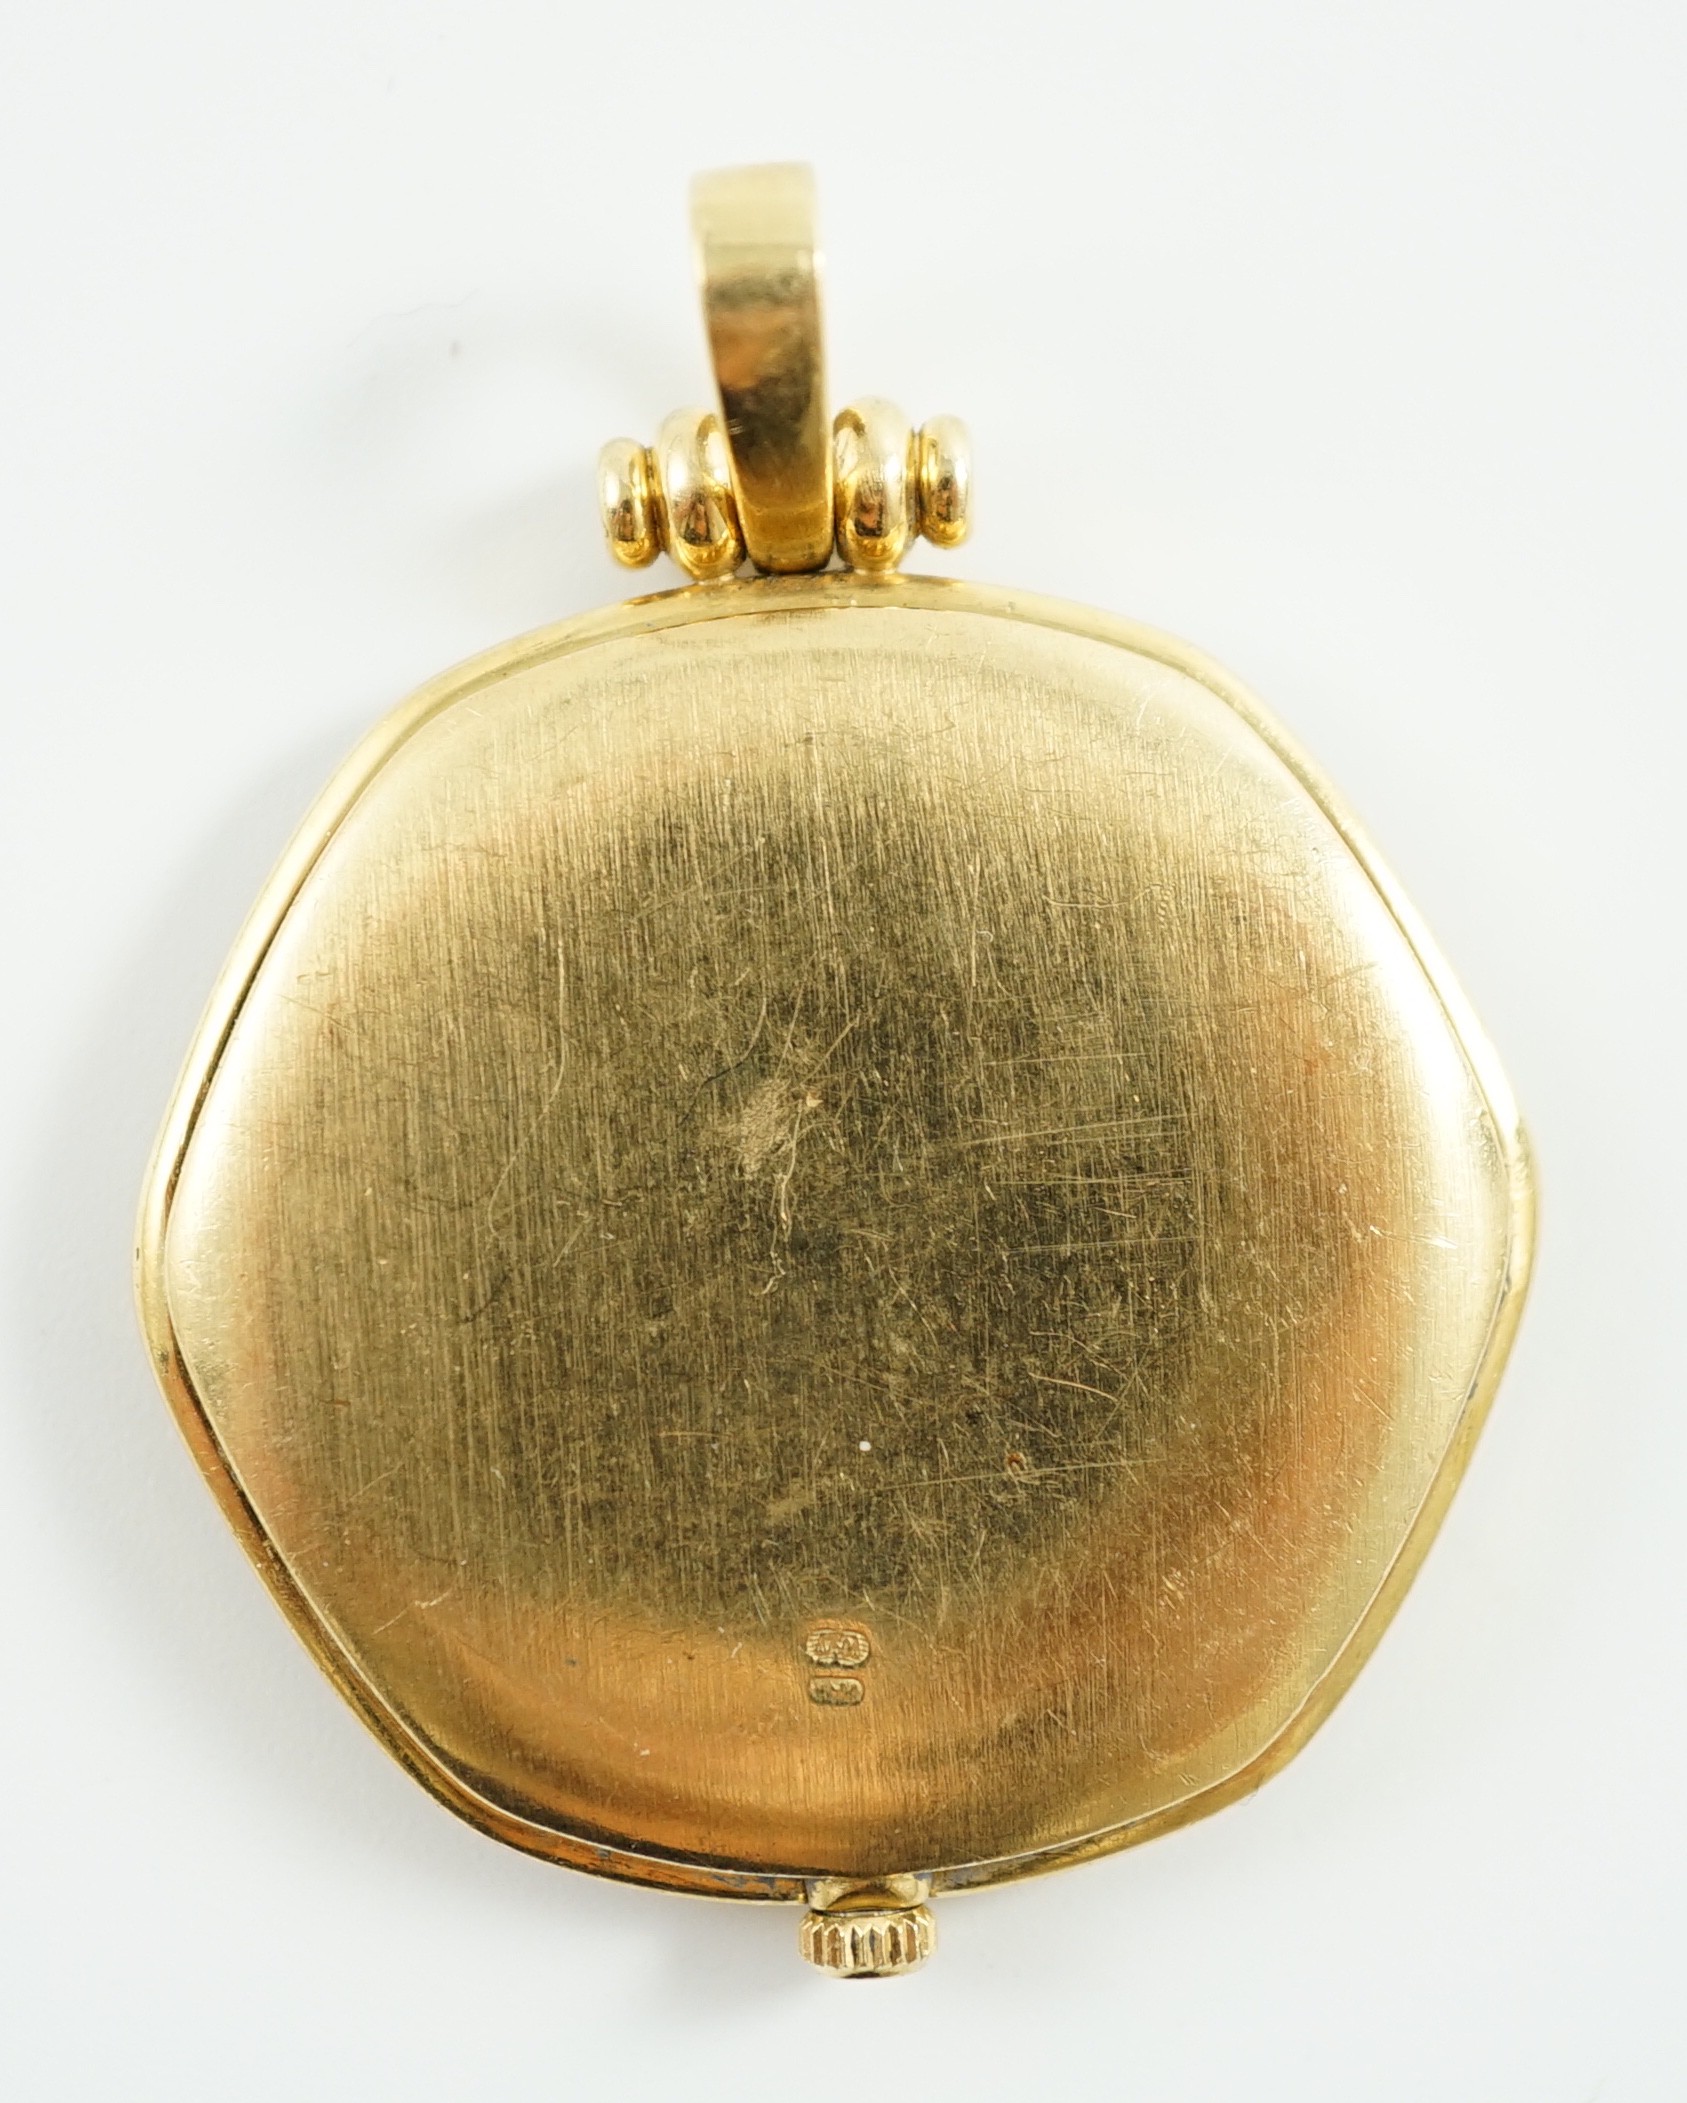 A modern 18ct gold and diamond set quartz shaped hexagonal pendant dress watch, retailed by Garrard